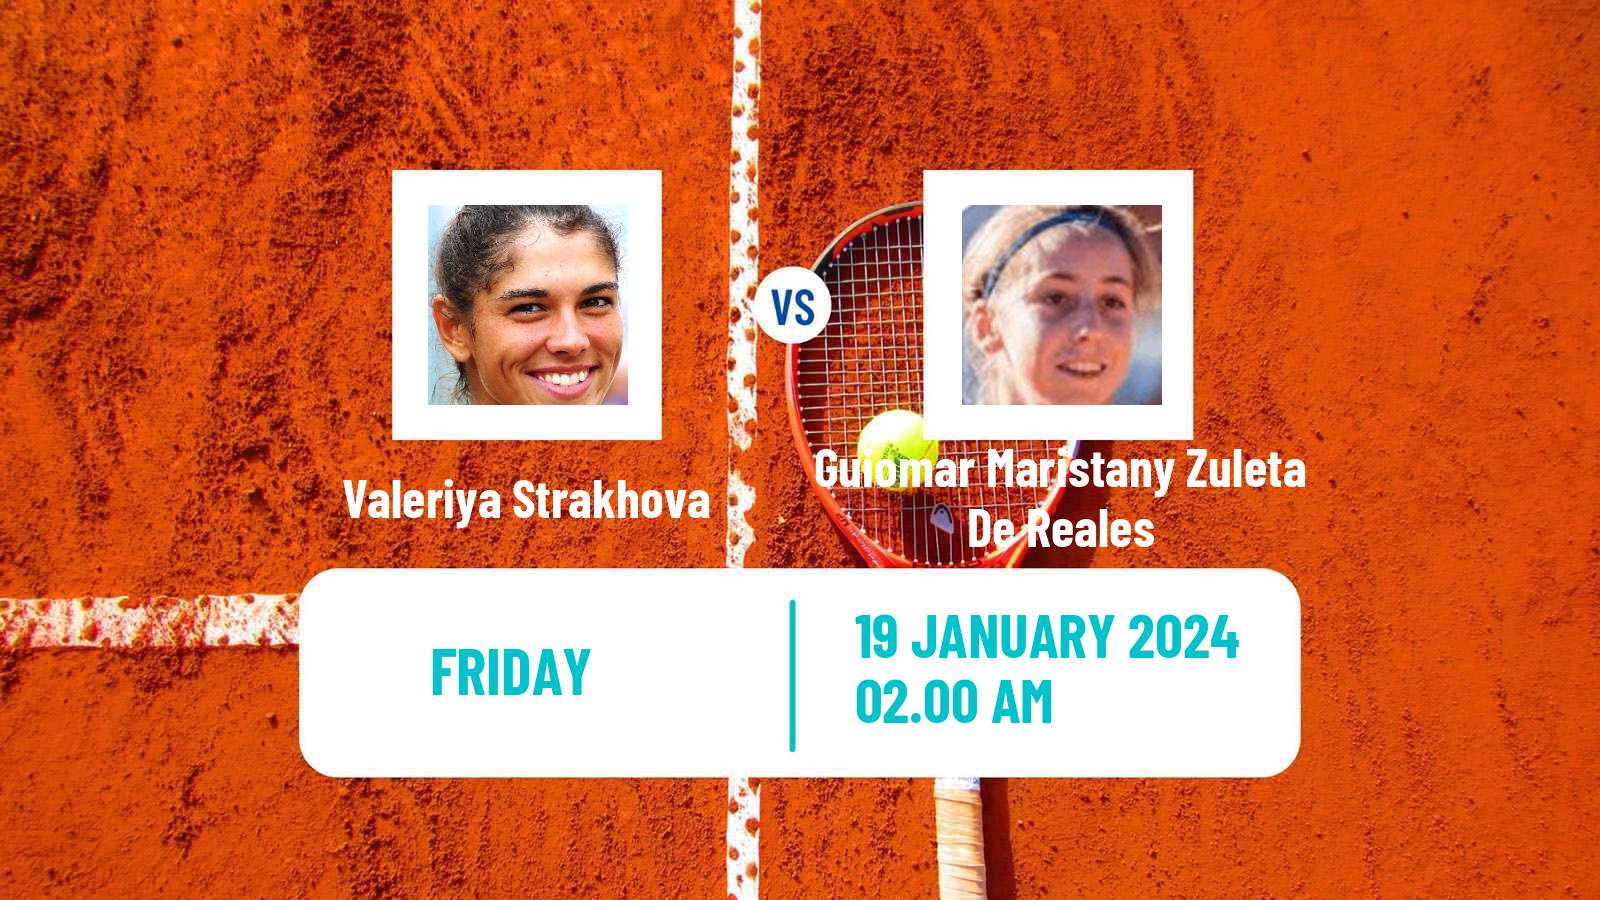 Tennis ITF W50 Antalya Women Valeriya Strakhova - Guiomar Maristany Zuleta De Reales